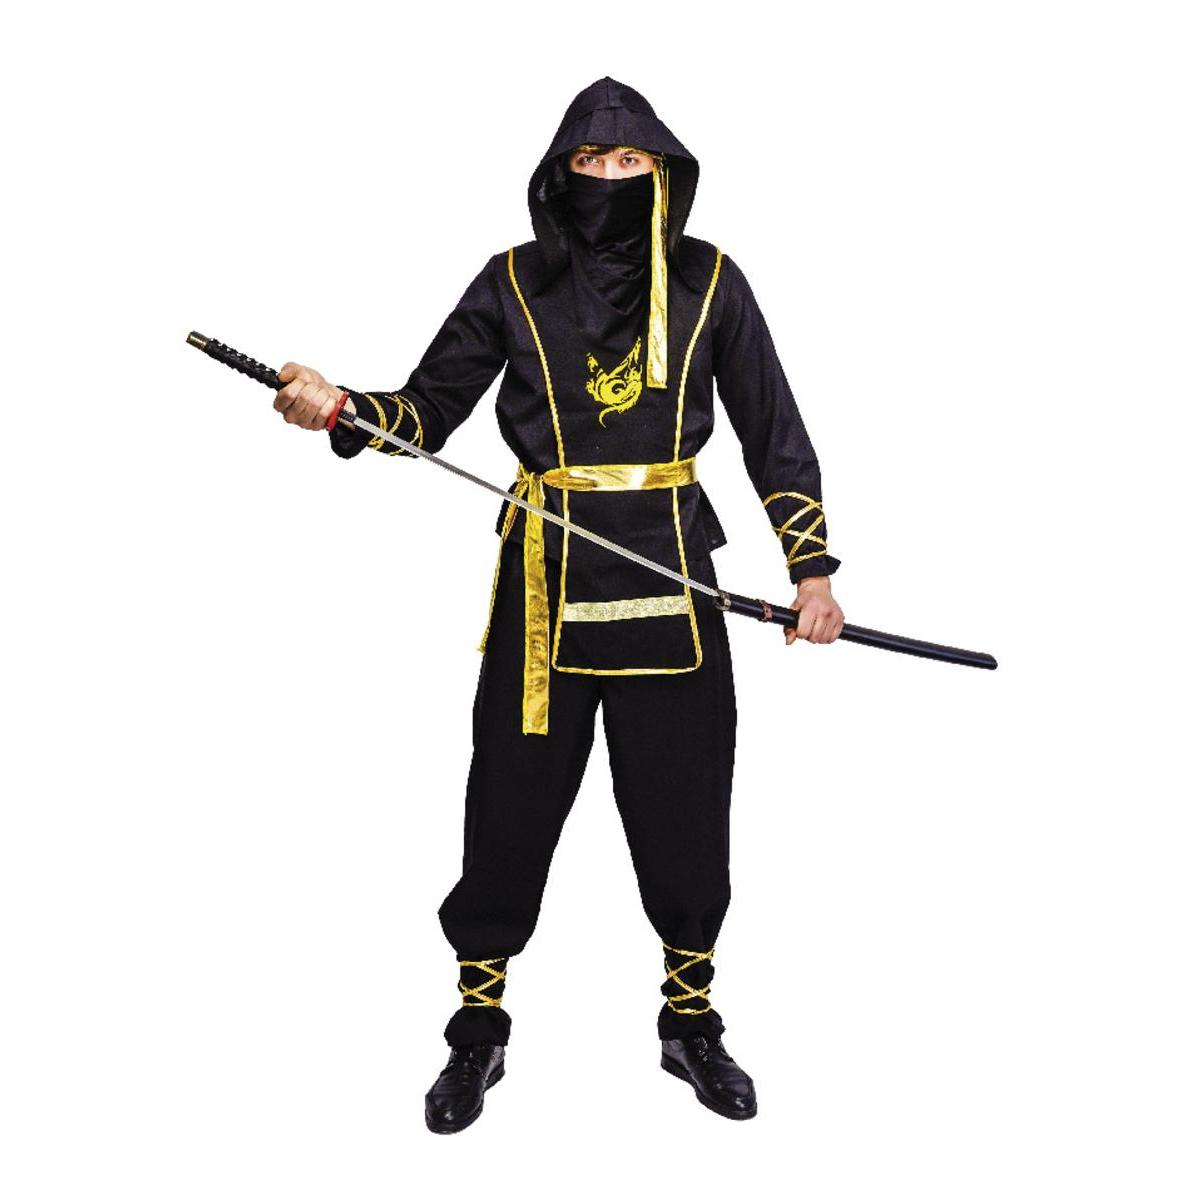 Costume ninja - Taille adulte - S/M - L 39 x H 3 x l 29 cm - Multicolore - PTIT CLOWN